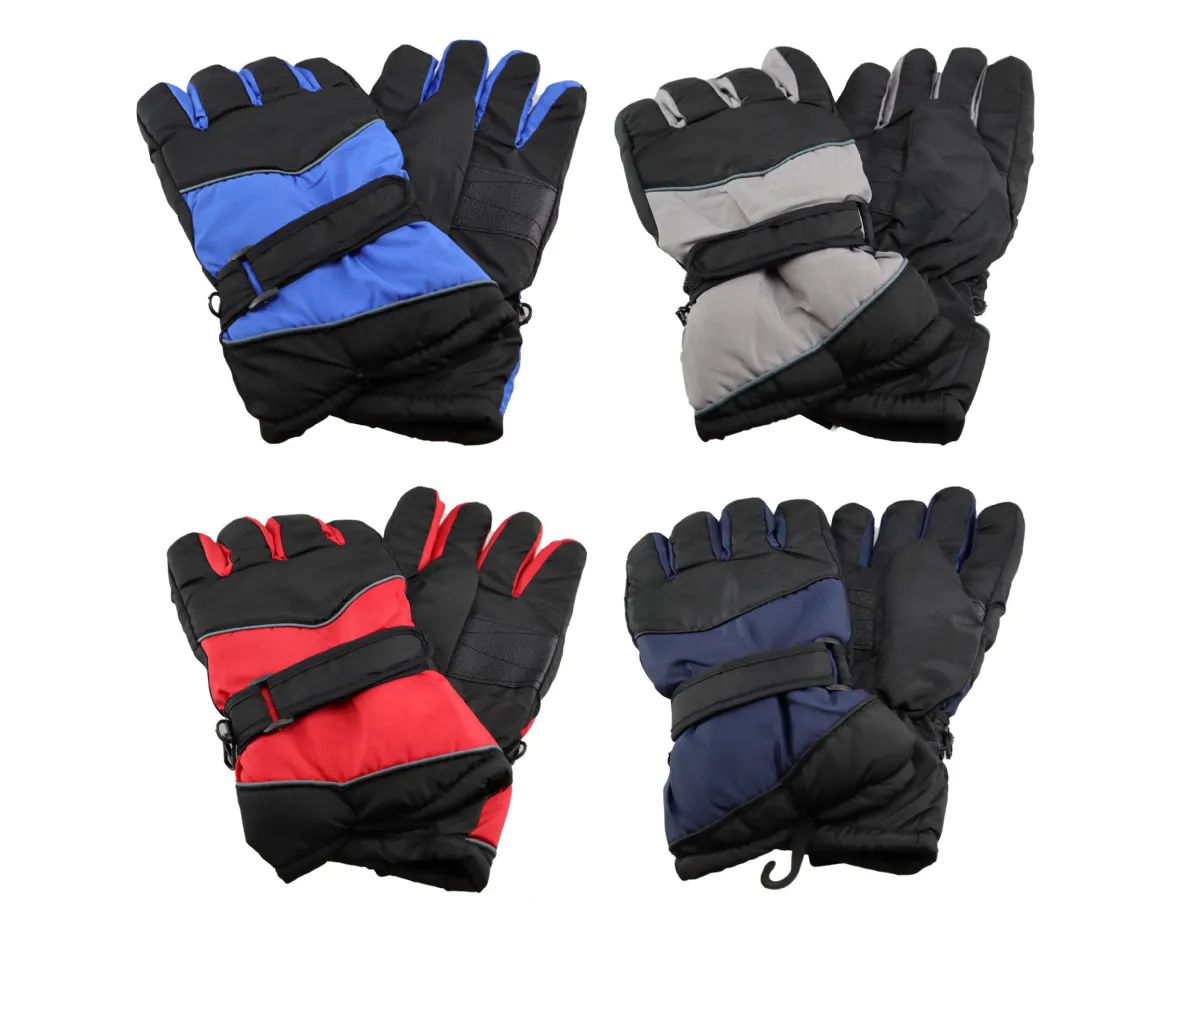 24 Pieces of Men Water Resistant Ski Glove